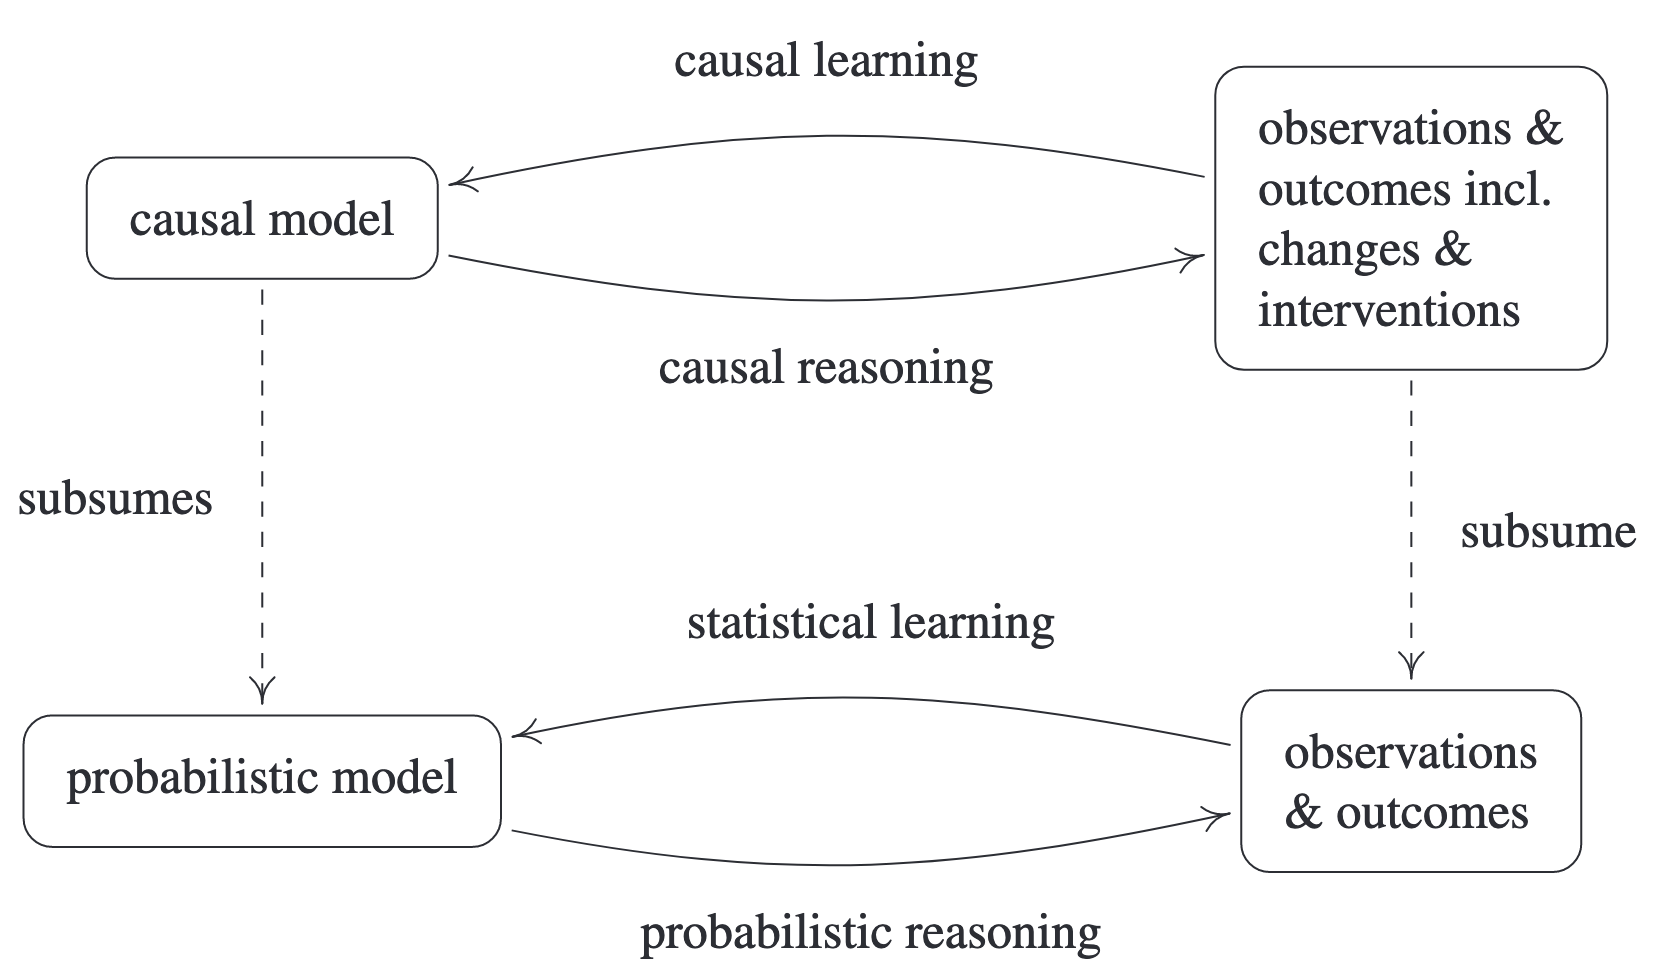 Типичные задачи эконометрики - statistical learning, машинного обучения - probabilistic reasoning и их связь с задачами causal learning - выявления причинно-следственных связей и causal reasoning - предсказания (управления) с учетом этих связей.